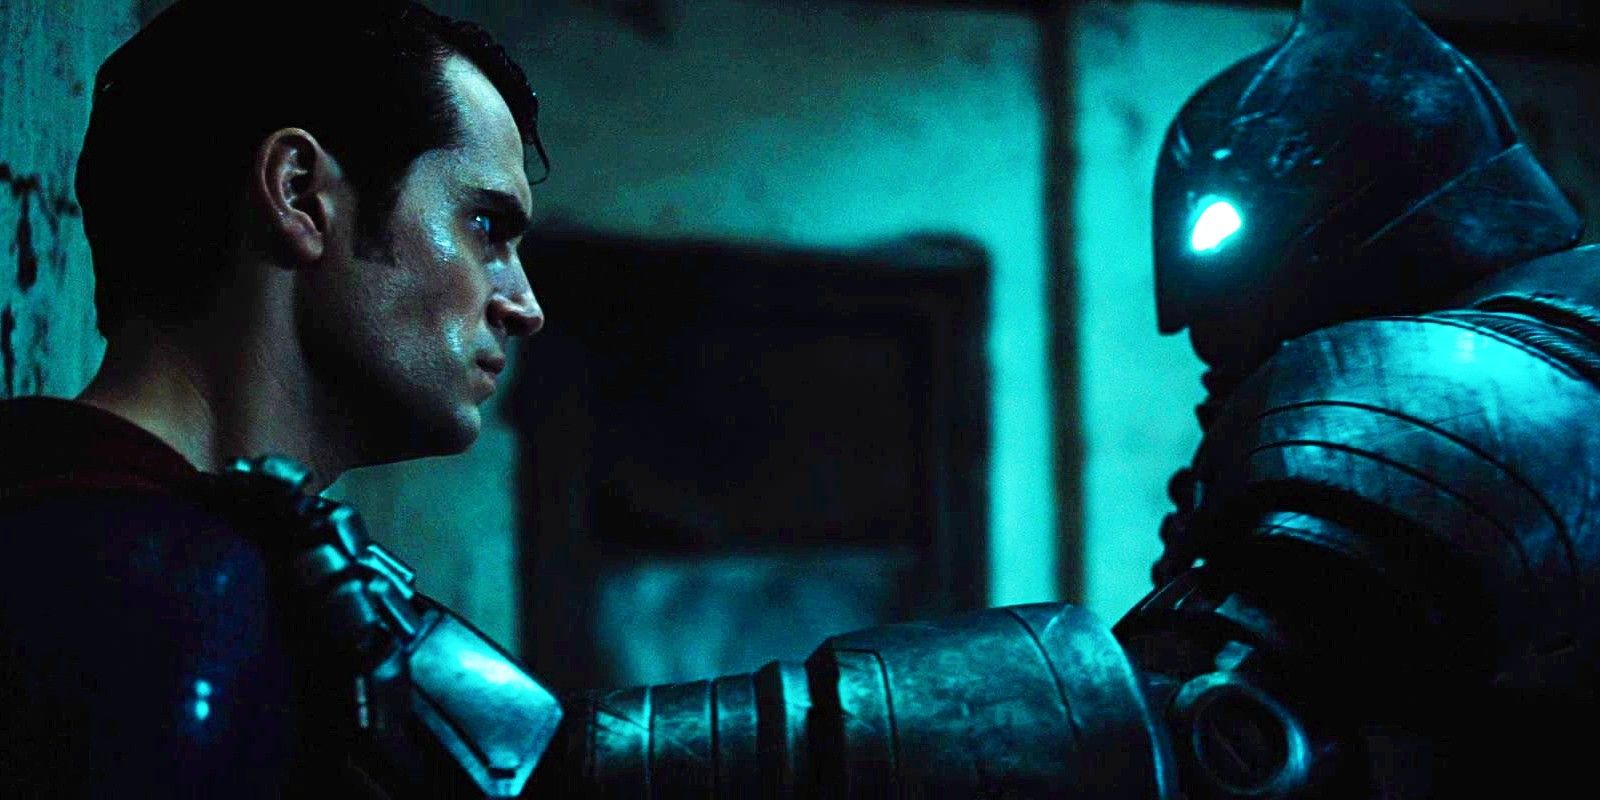 BVS Зака ​​Снайдера почти получил рейтинг R, потому что MPAA заявило: «Нам просто не нравится идея борьбы Бэтмена с Суперменом»